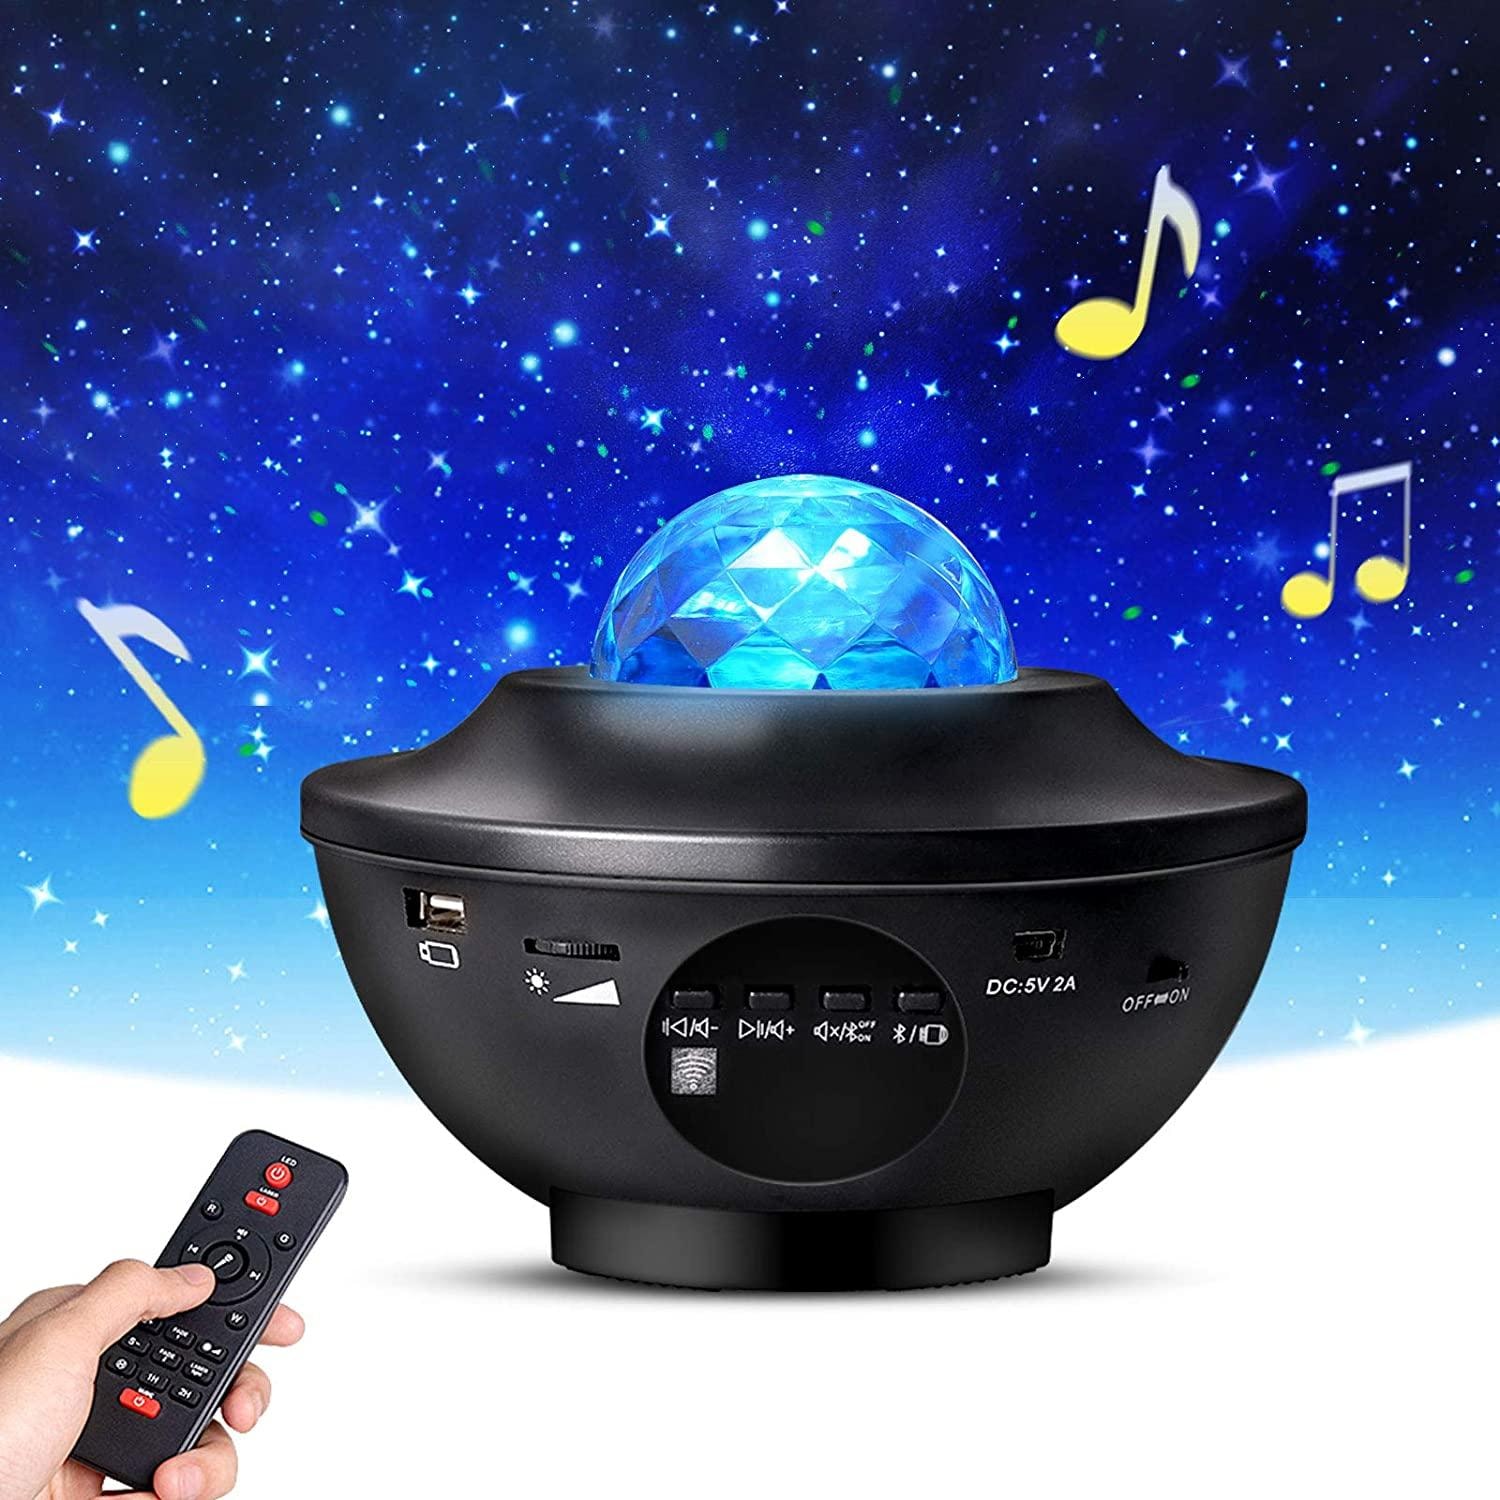 Stjärnprojektor LED - Galaxy Star Projector - Högtalare Bluetooth TikTok (1 av 8)